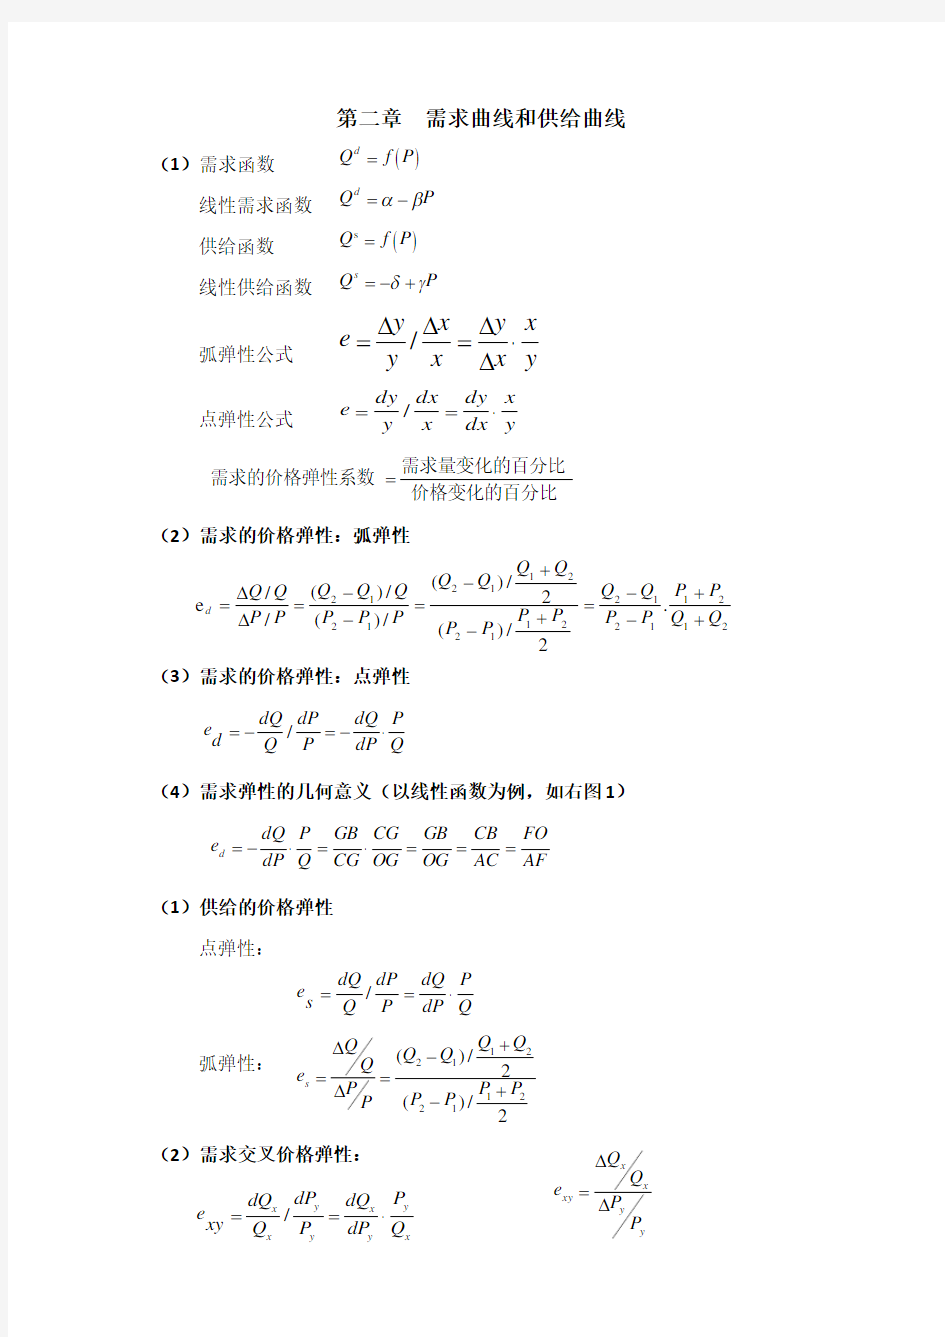 微观经济学计算公式(最全)